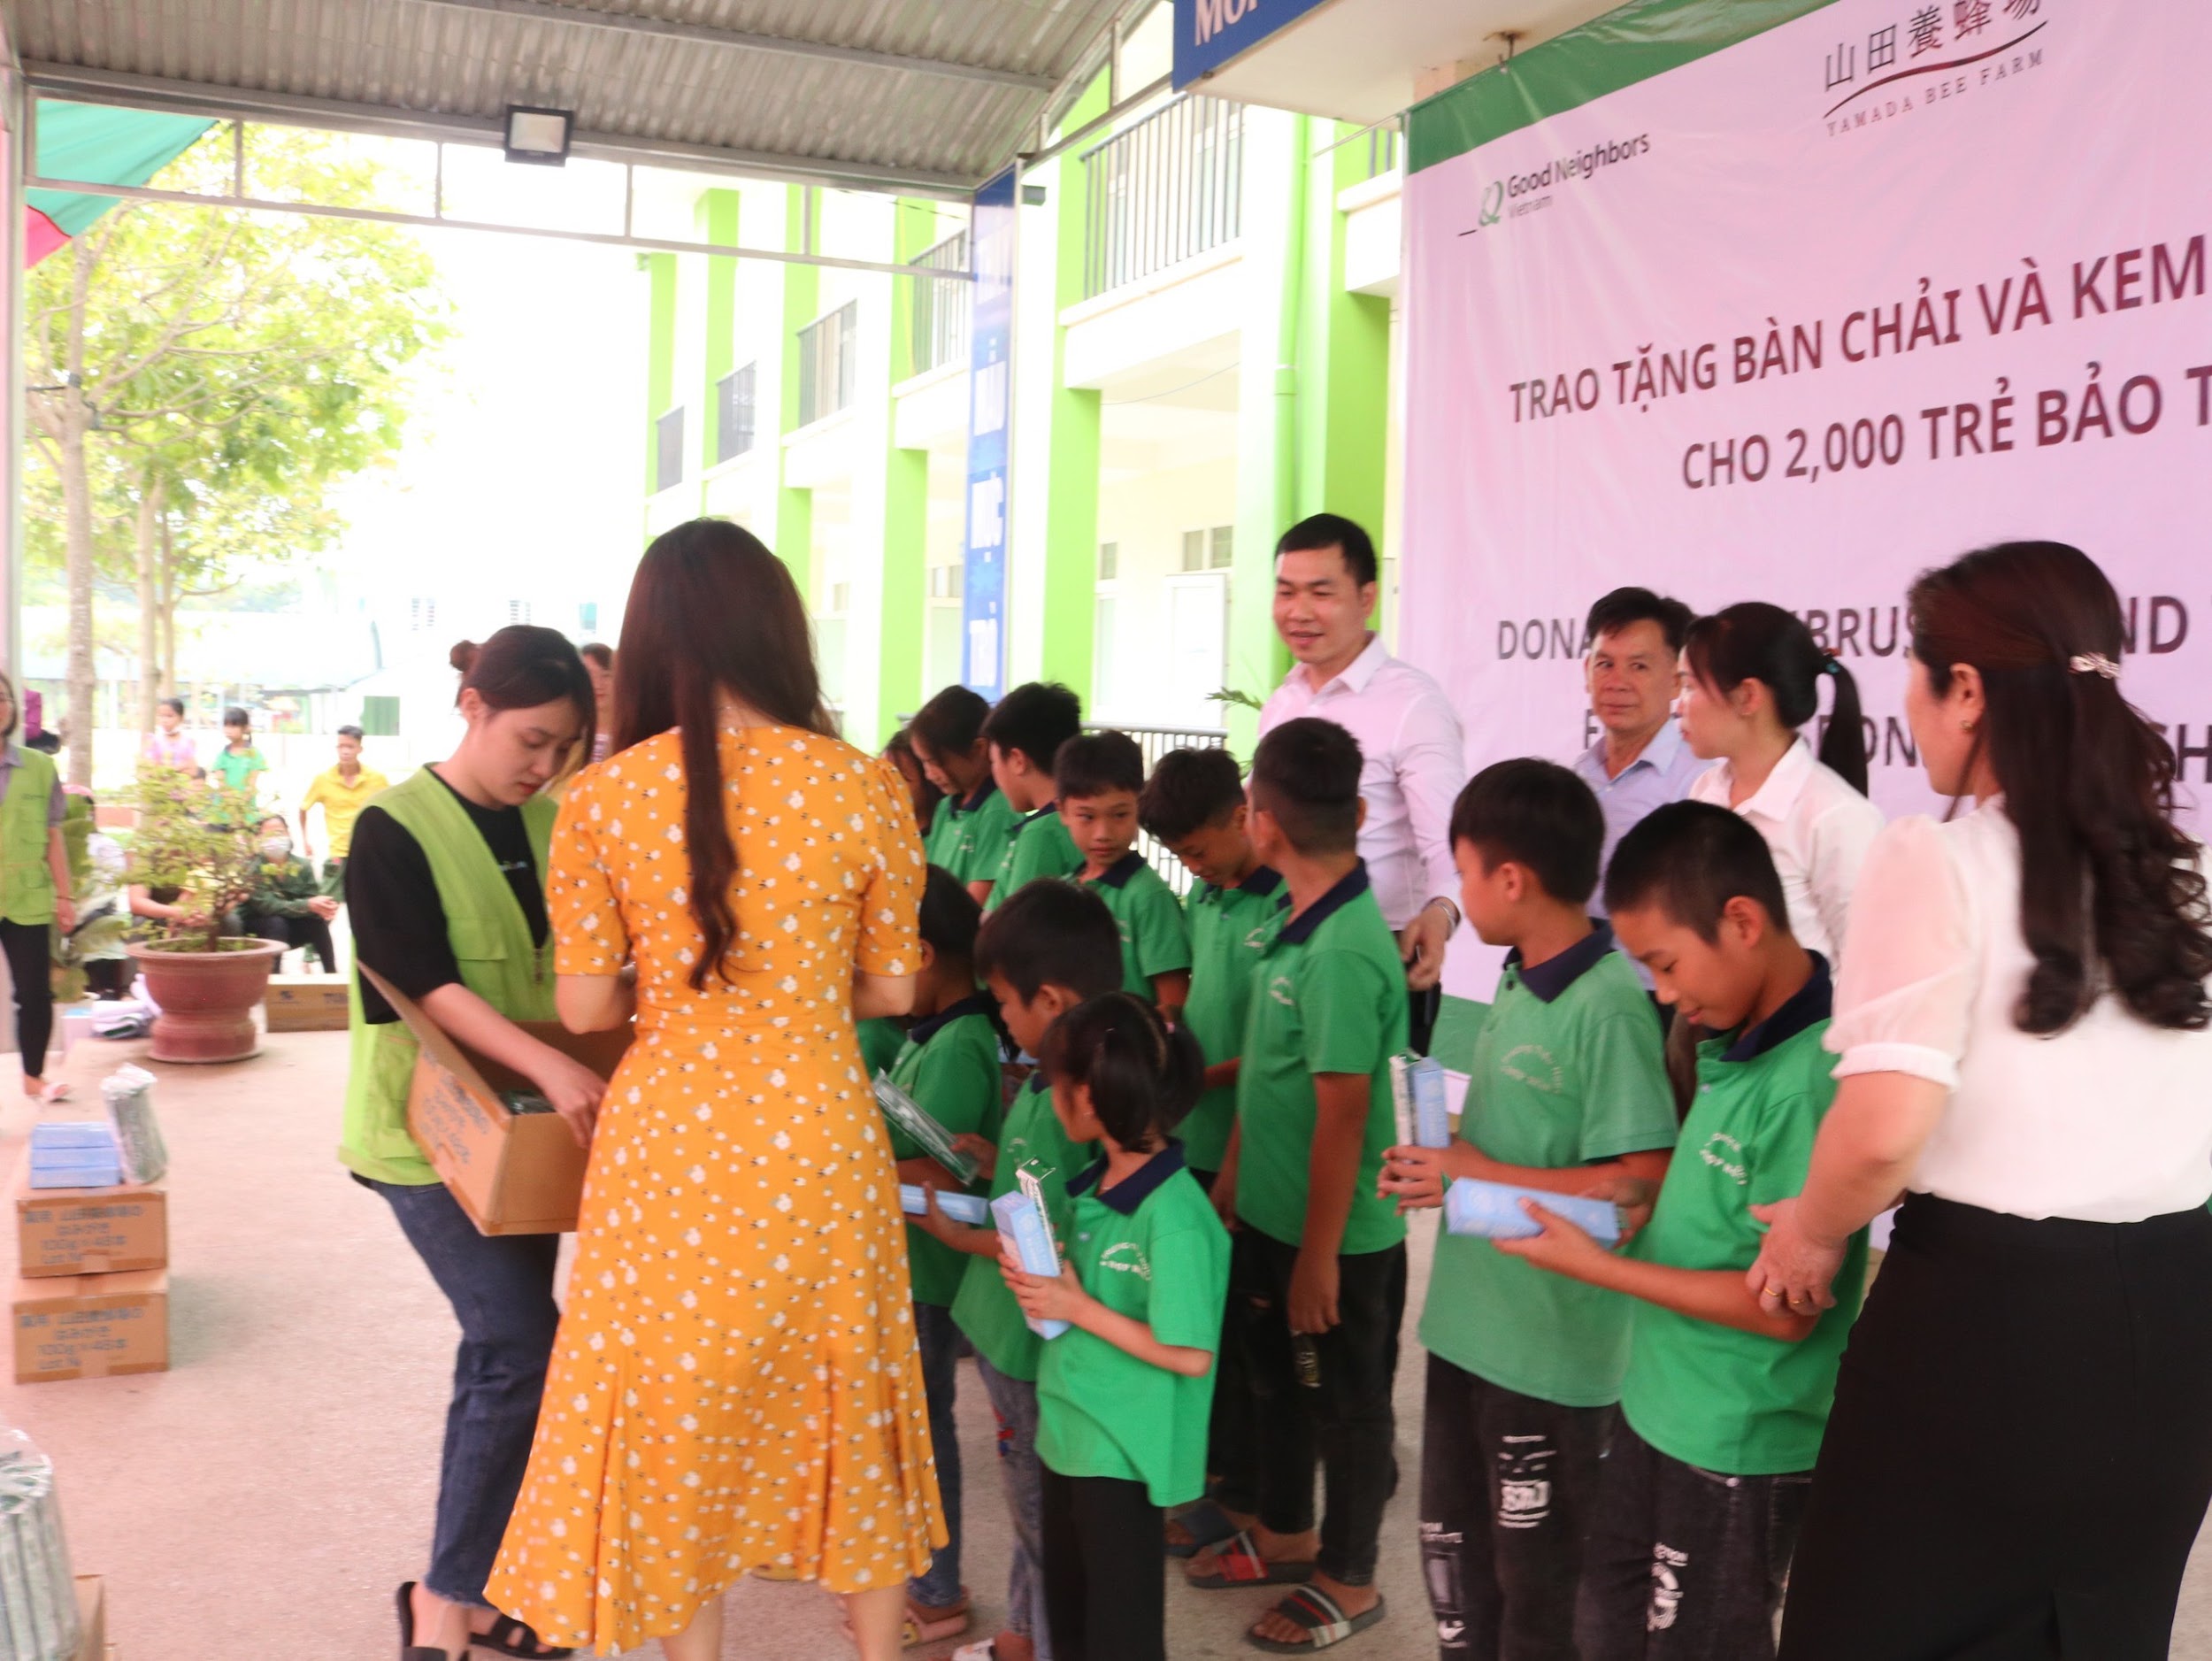 Hiaki Health Care cùng quỹ bảo trợ trẻ em GNI đồng tổ chức thực hiện chương trình từ thiện trao quà cho trẻ em tỉnh Tuyên Quang - 1